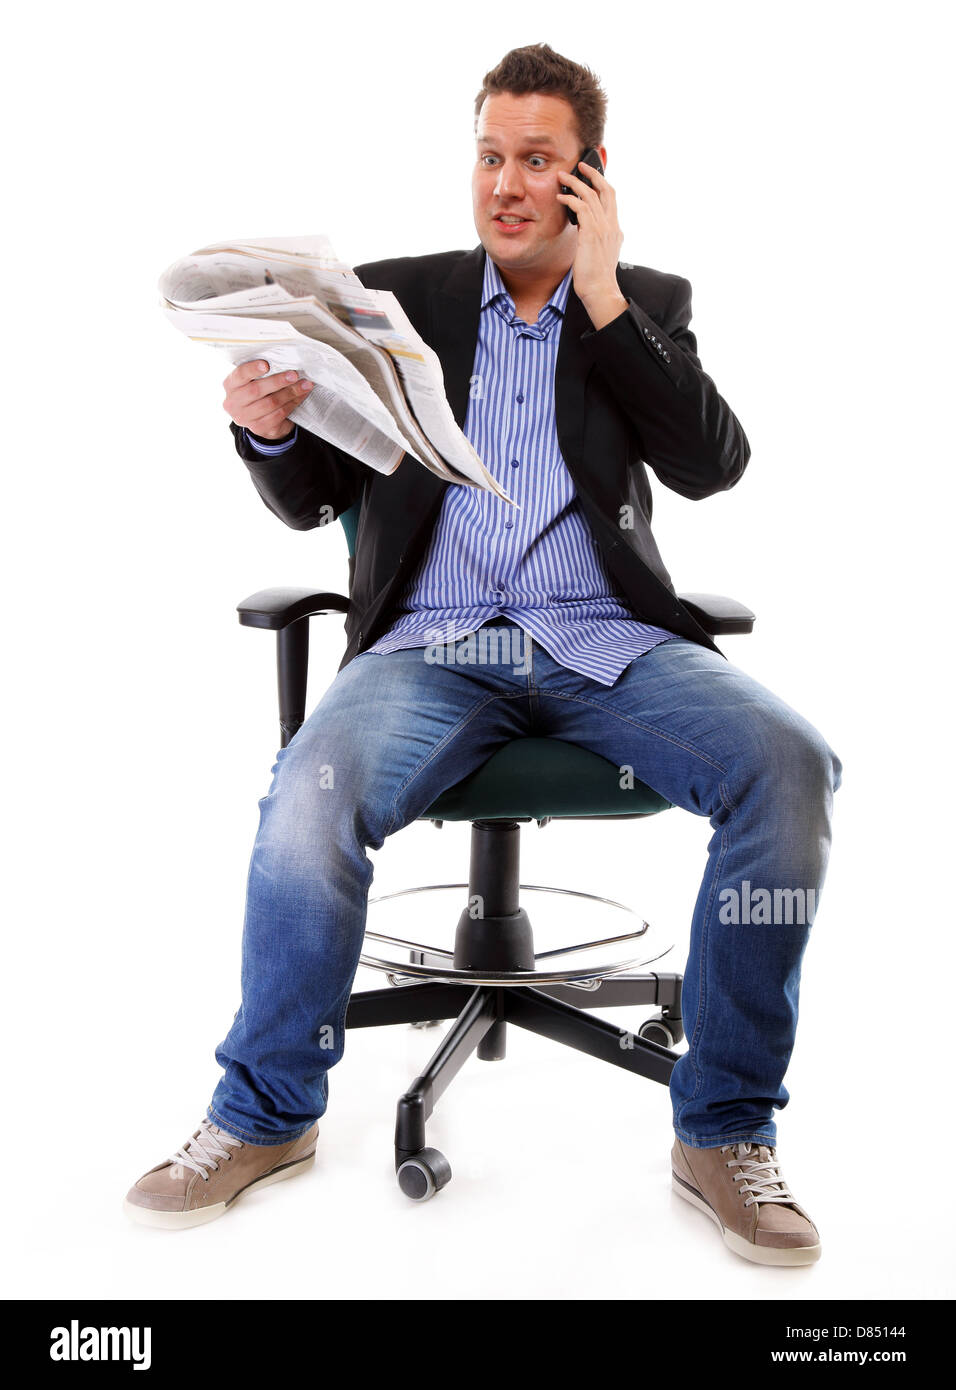 Un homme a l'air surpris, choqué en lisant un journal speek phone white background Banque D'Images